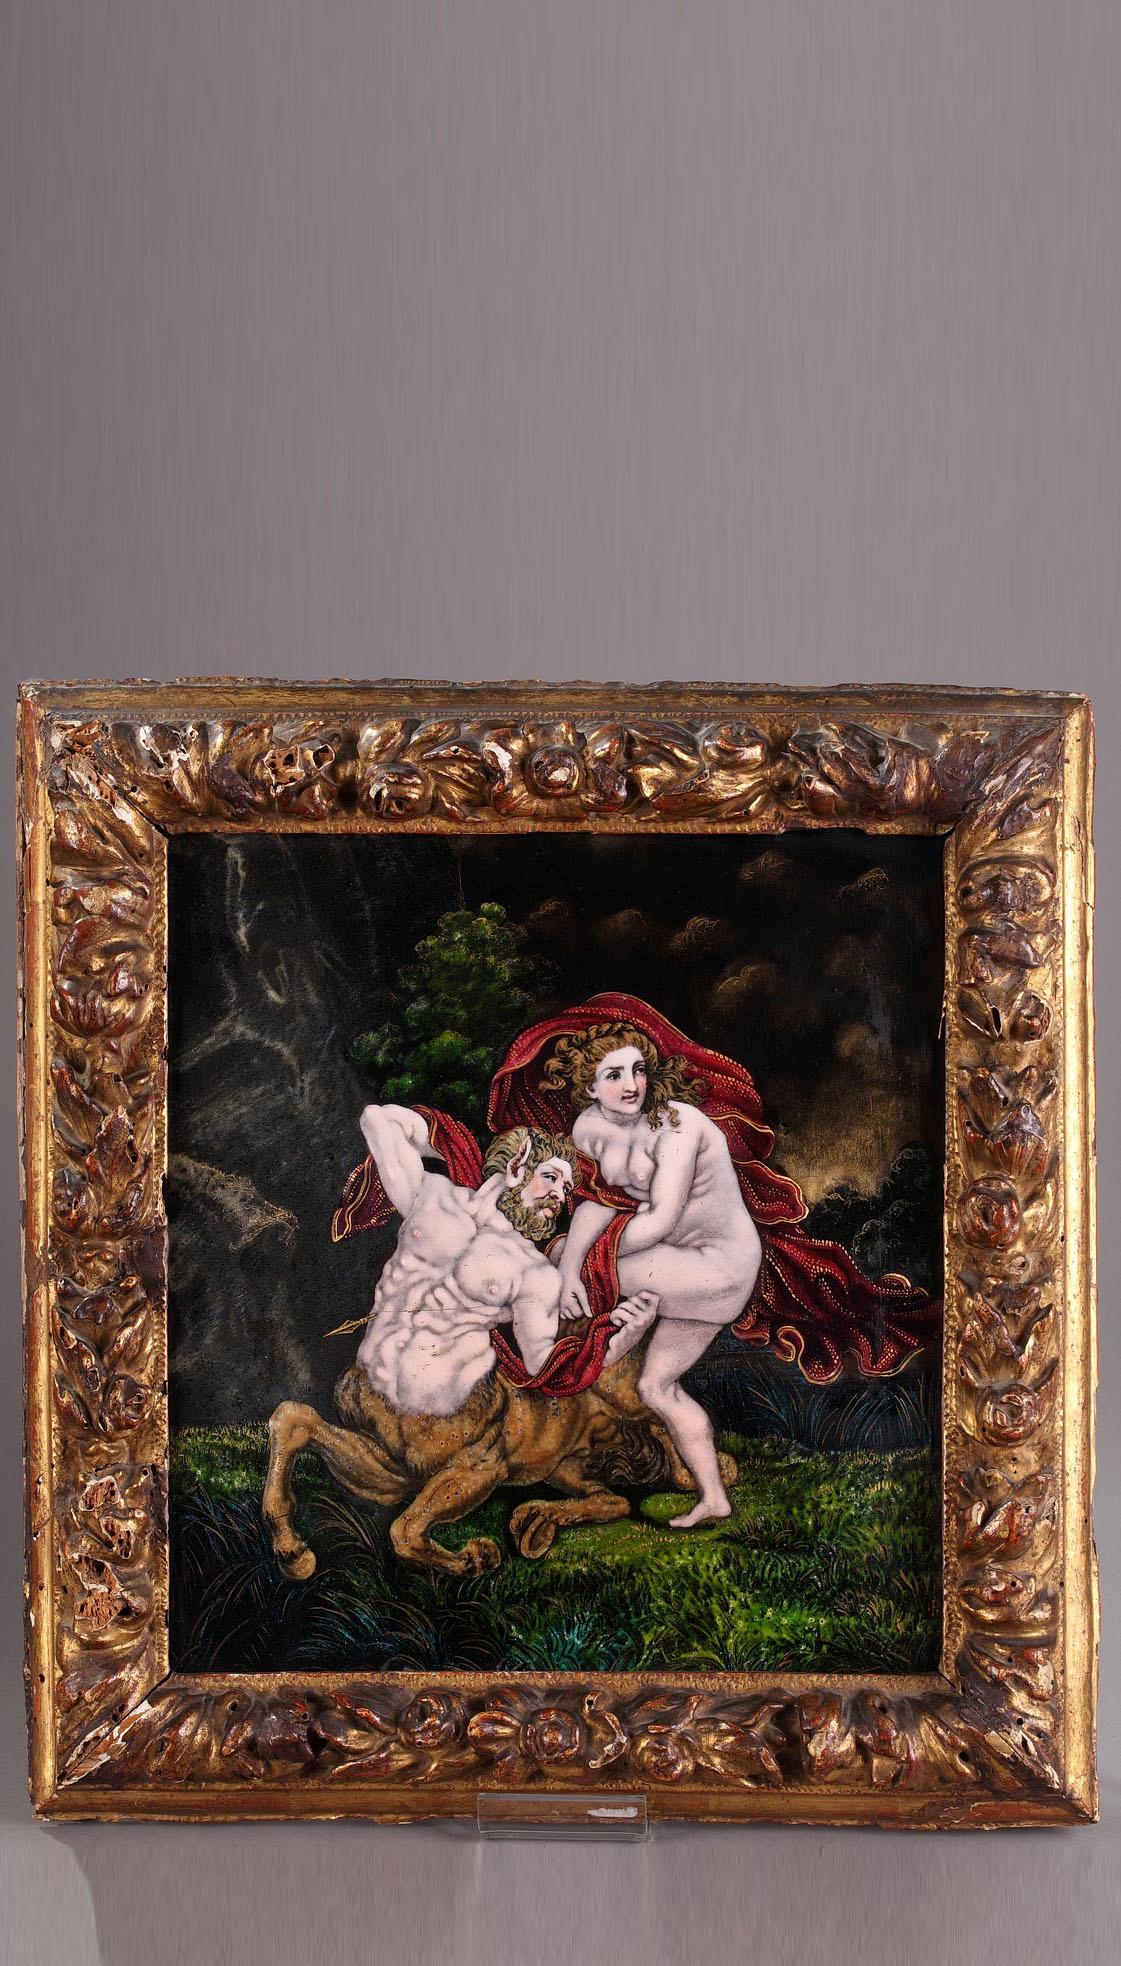 Limoges enamel plate of "Centaur Nessus" & gilded wood frame